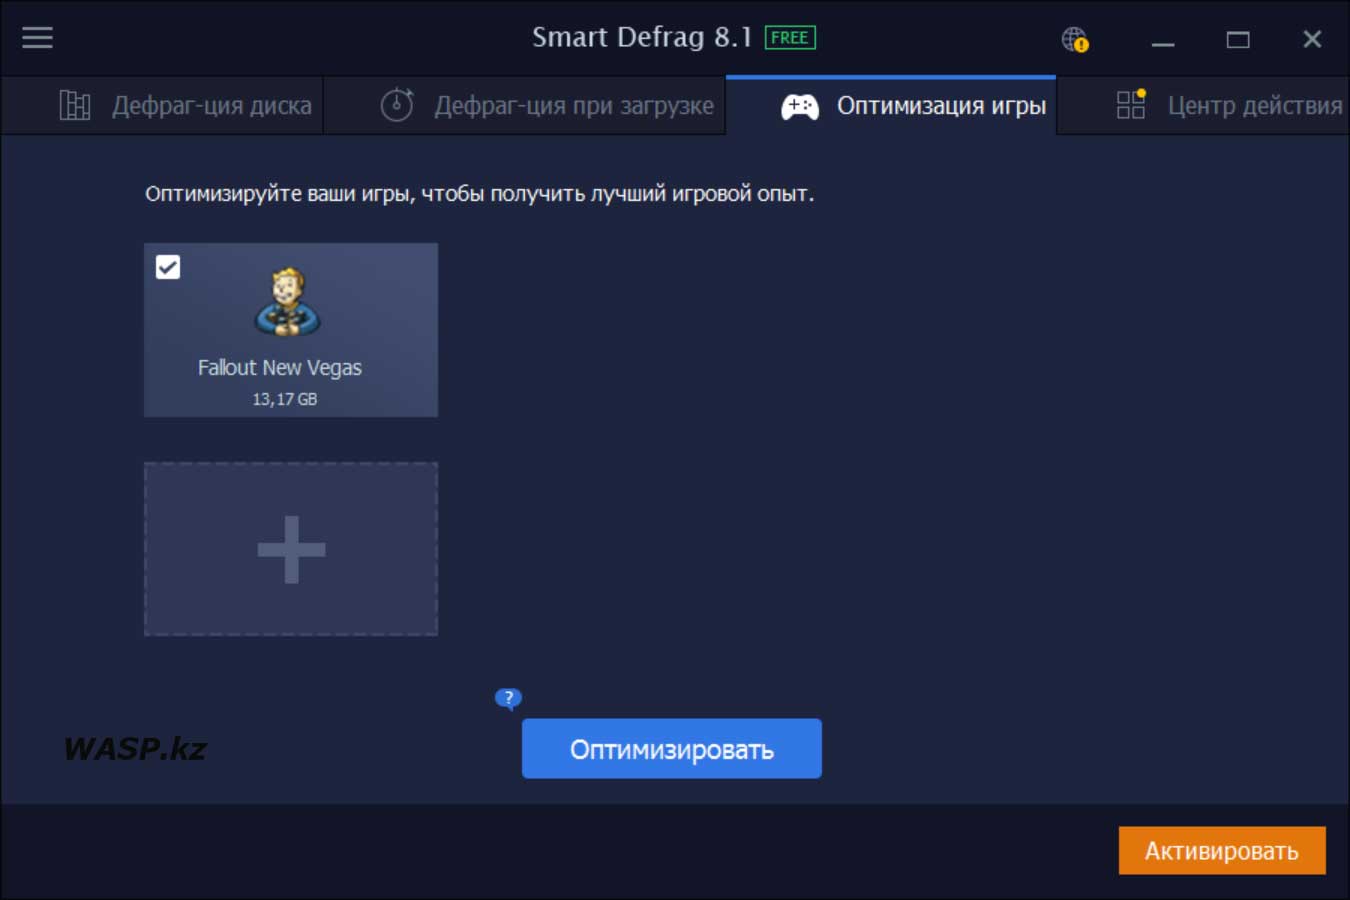 Smart Defrag 8.1 опимизация игры - как эта функция работает